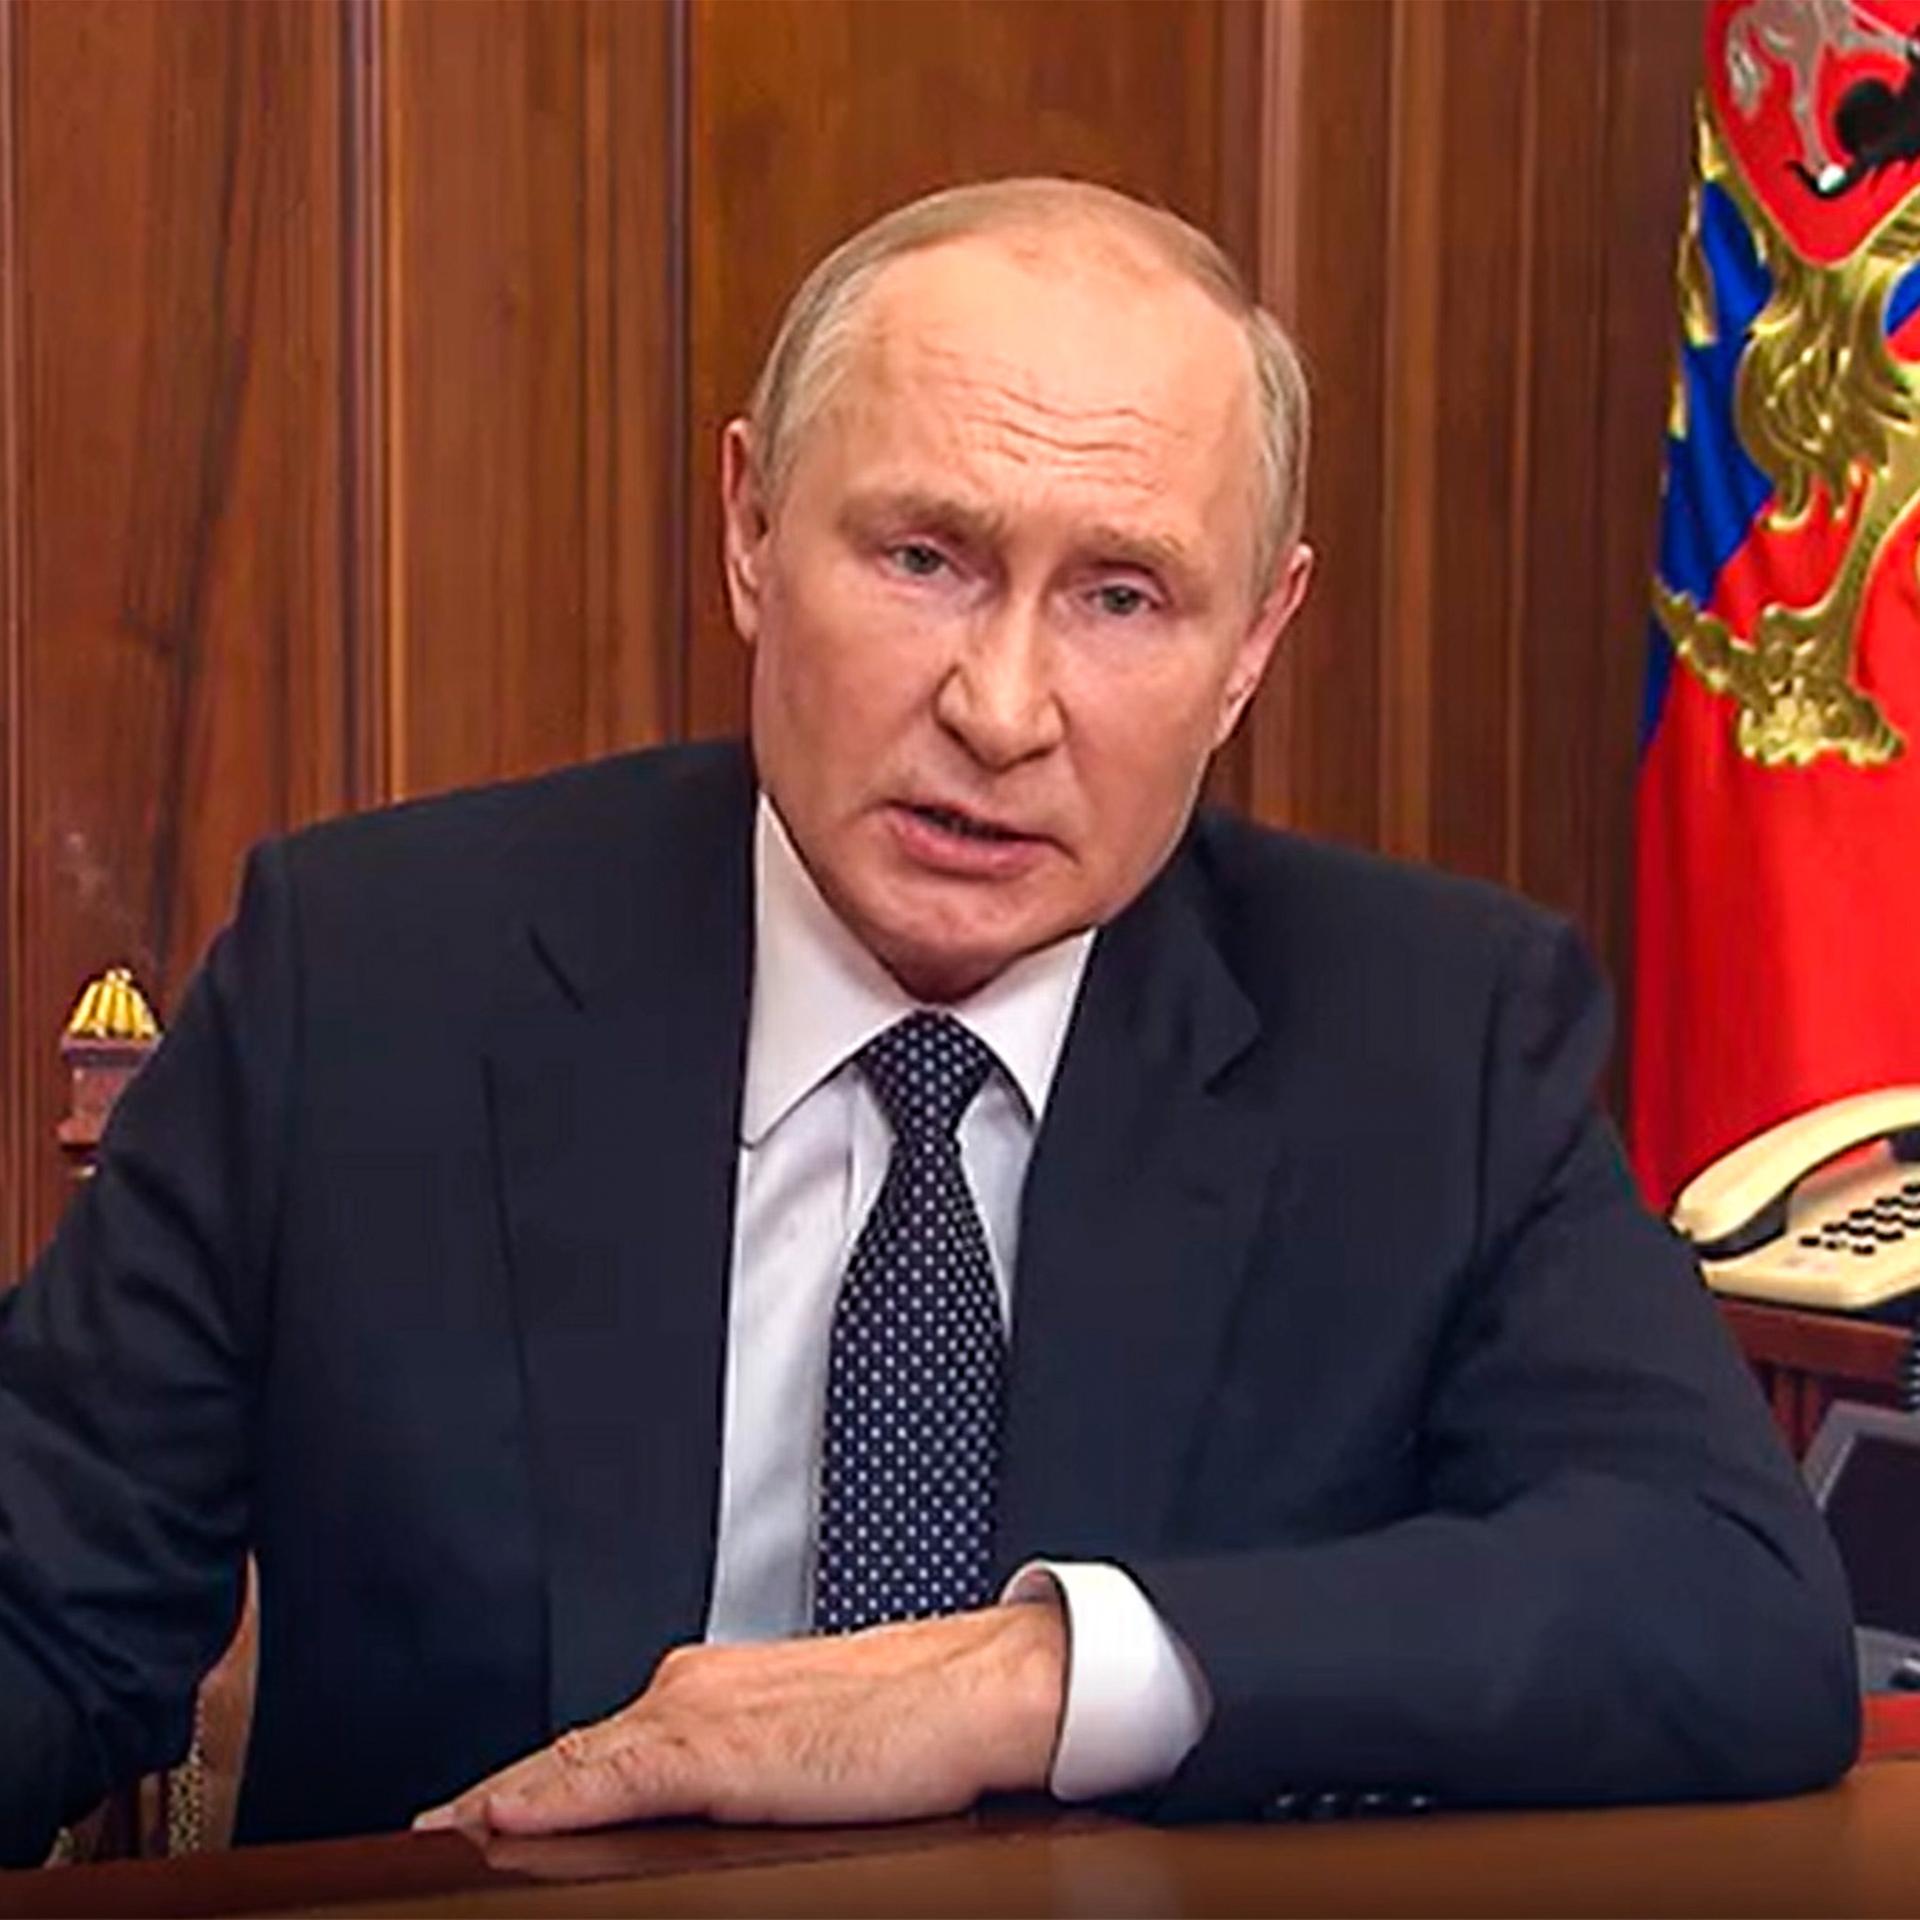 Der russische Präsident Wladimir Putin bei einer Fernsehansprache am 21. September 2022.